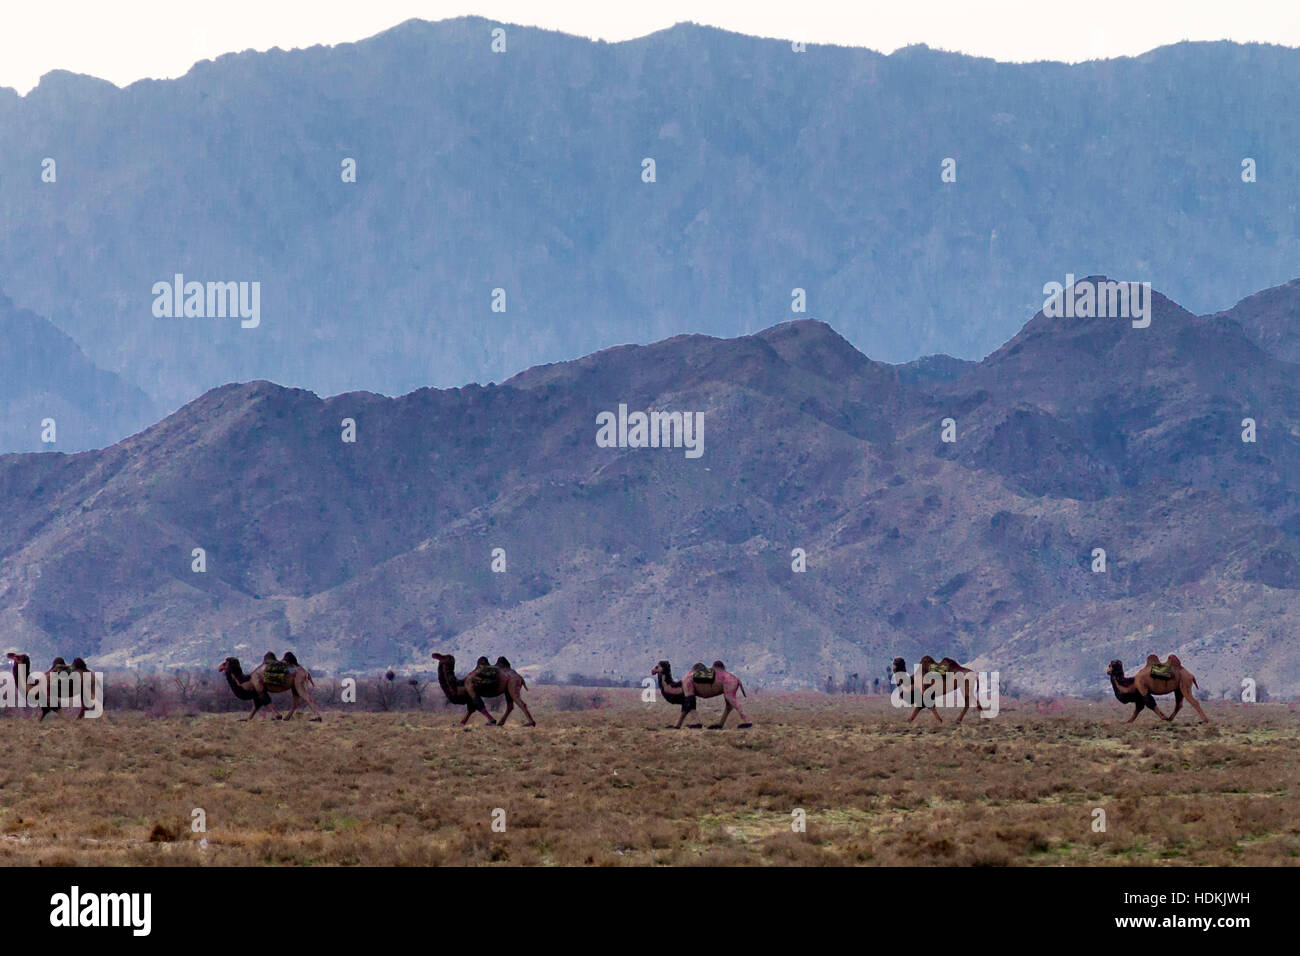 Camel train, Western Xia Mausoleum, Yinchuan, Ningxia, China Stock Photo